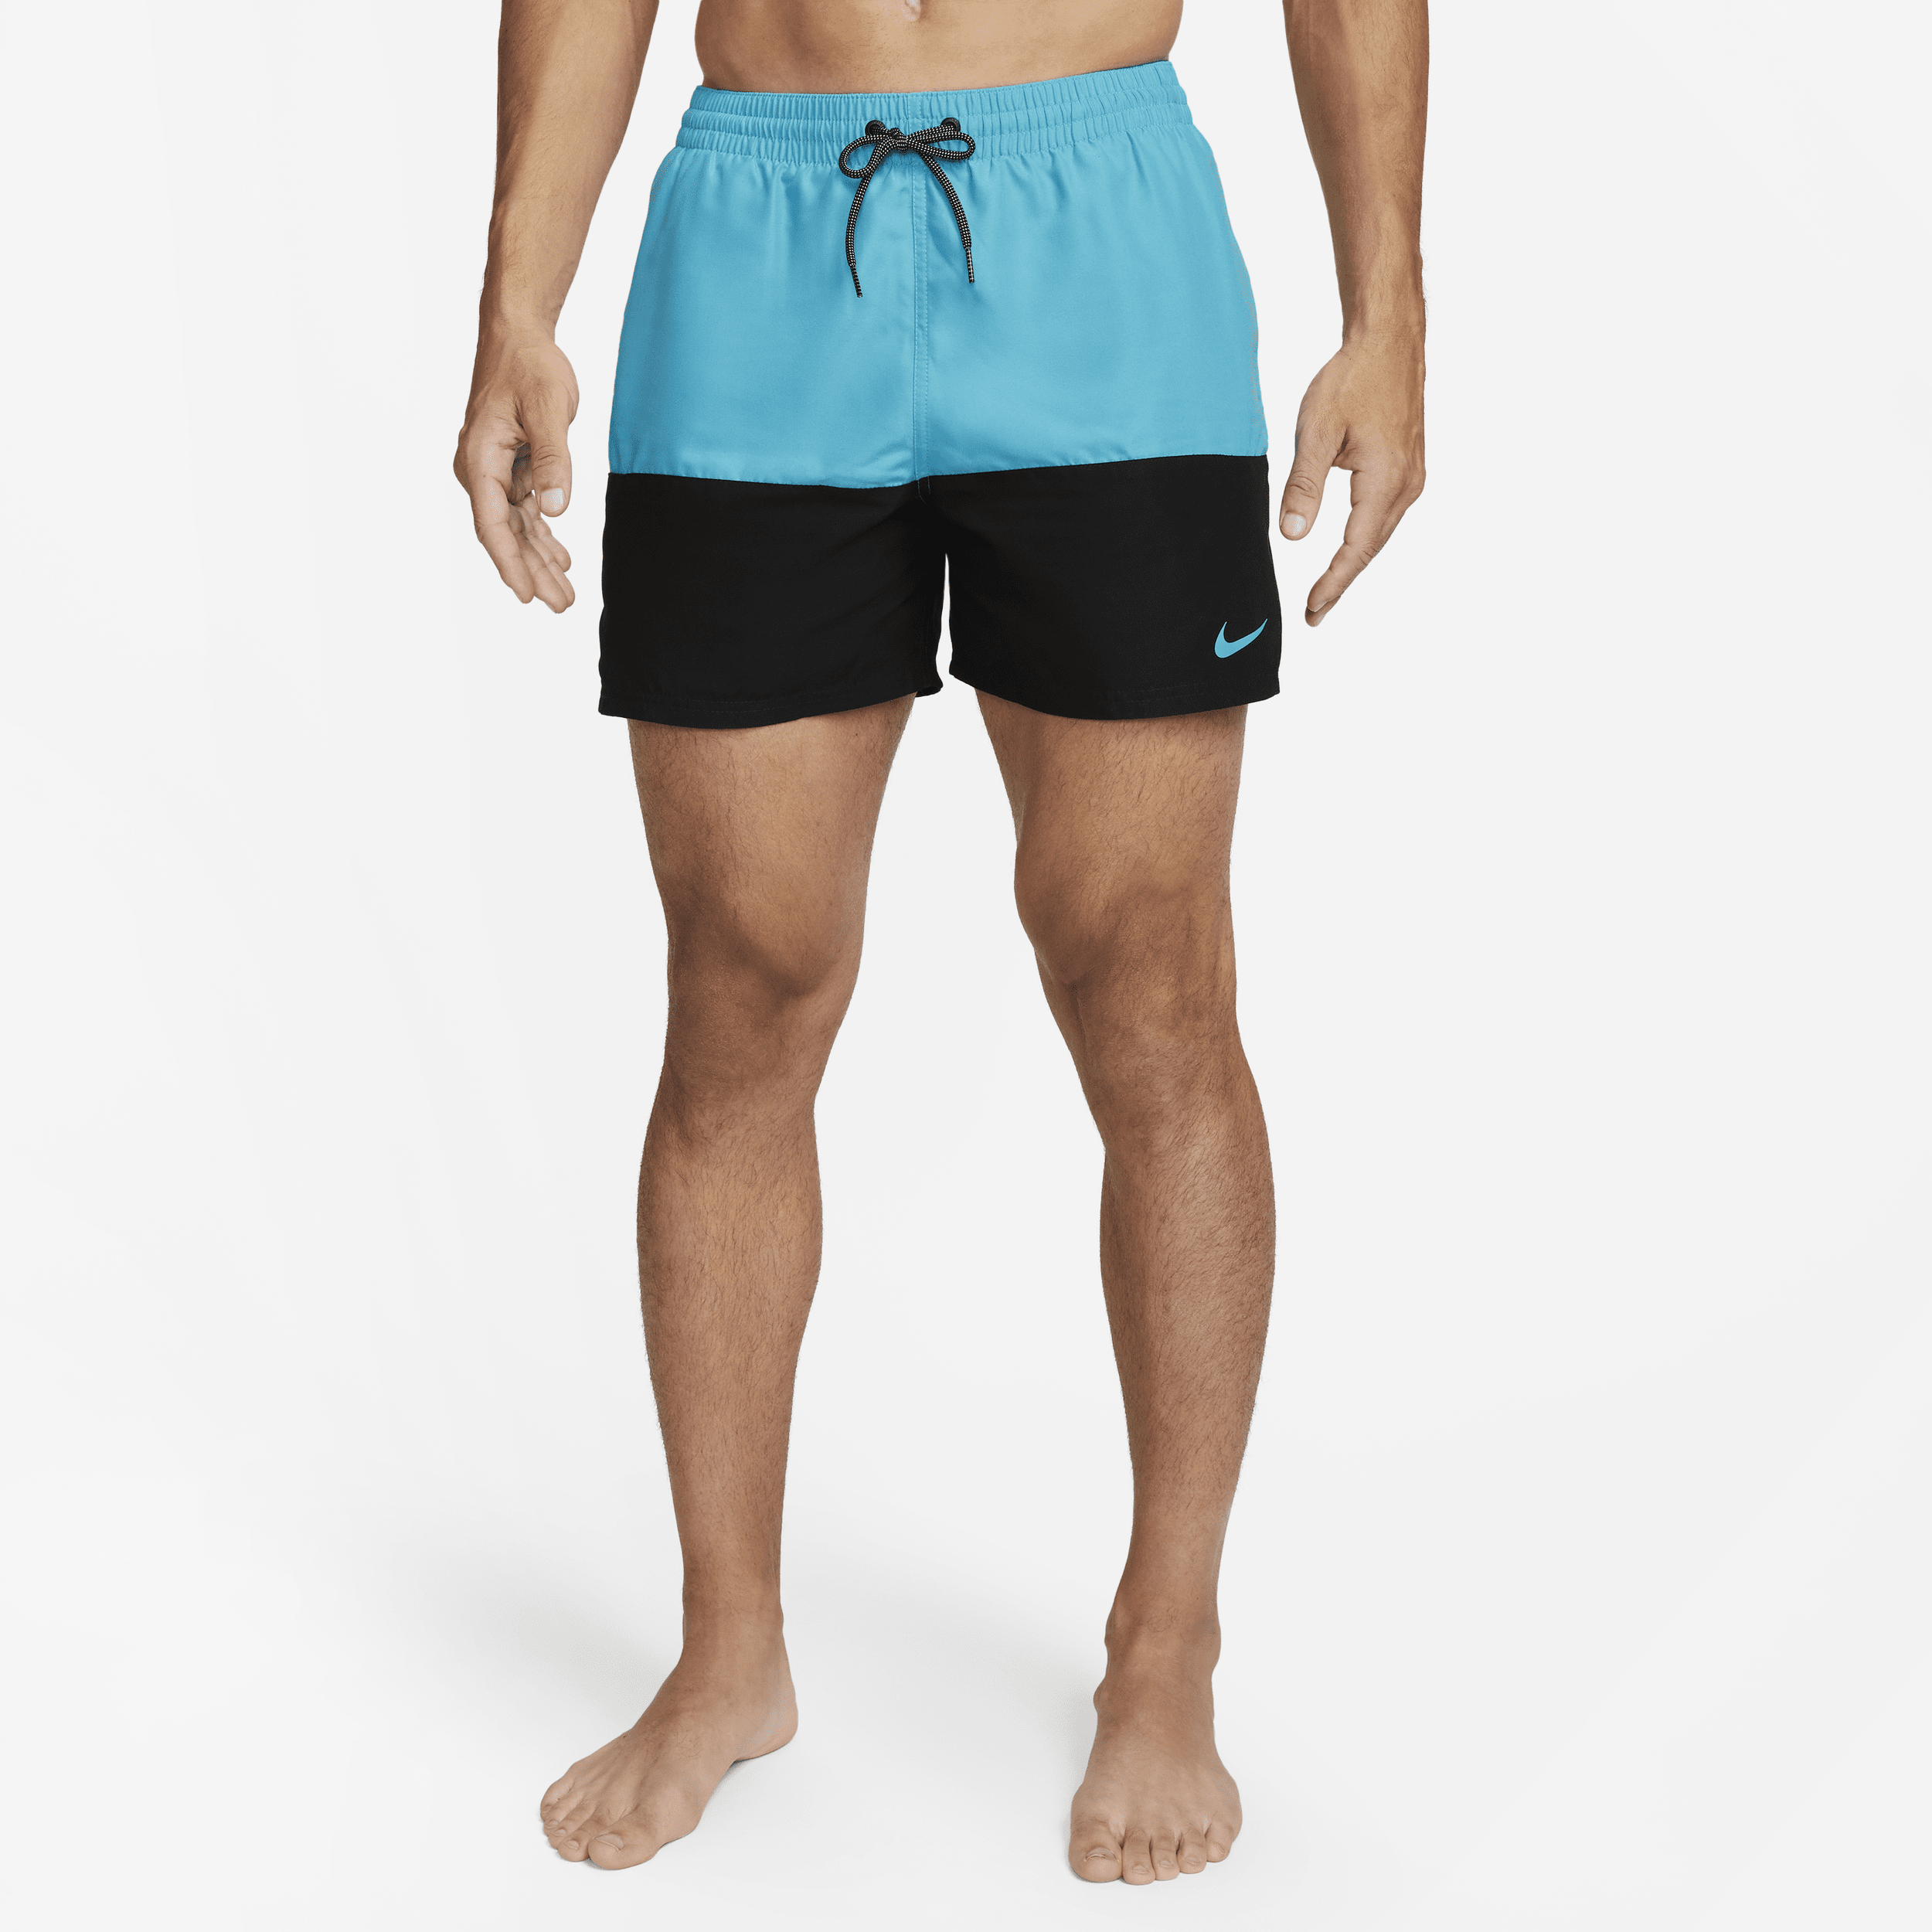 Costume da bagno 13 cm Nike Split - Uomo - Blu